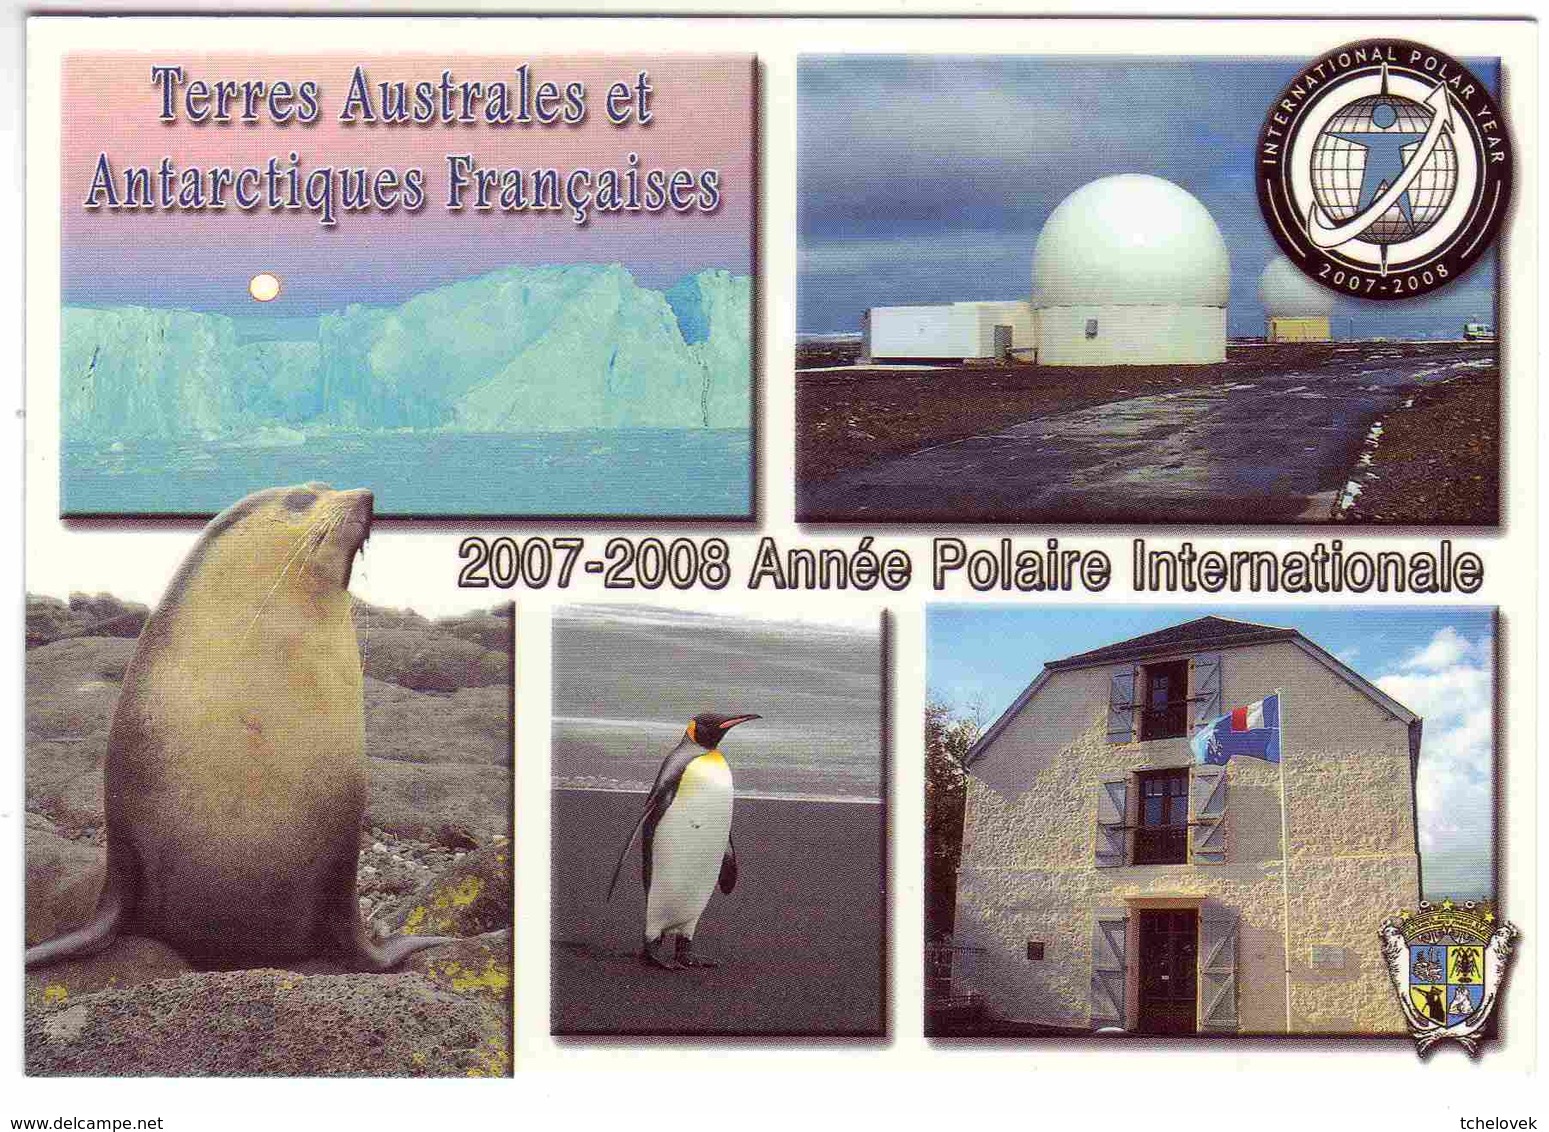 TAAF FSAT Ed Carlitex TS-TAAF-25 2007-2008 Année Polaire Internationale Batiment TAAF St Pierre De La Reunion - TAAF : Terres Australes Antarctiques Françaises